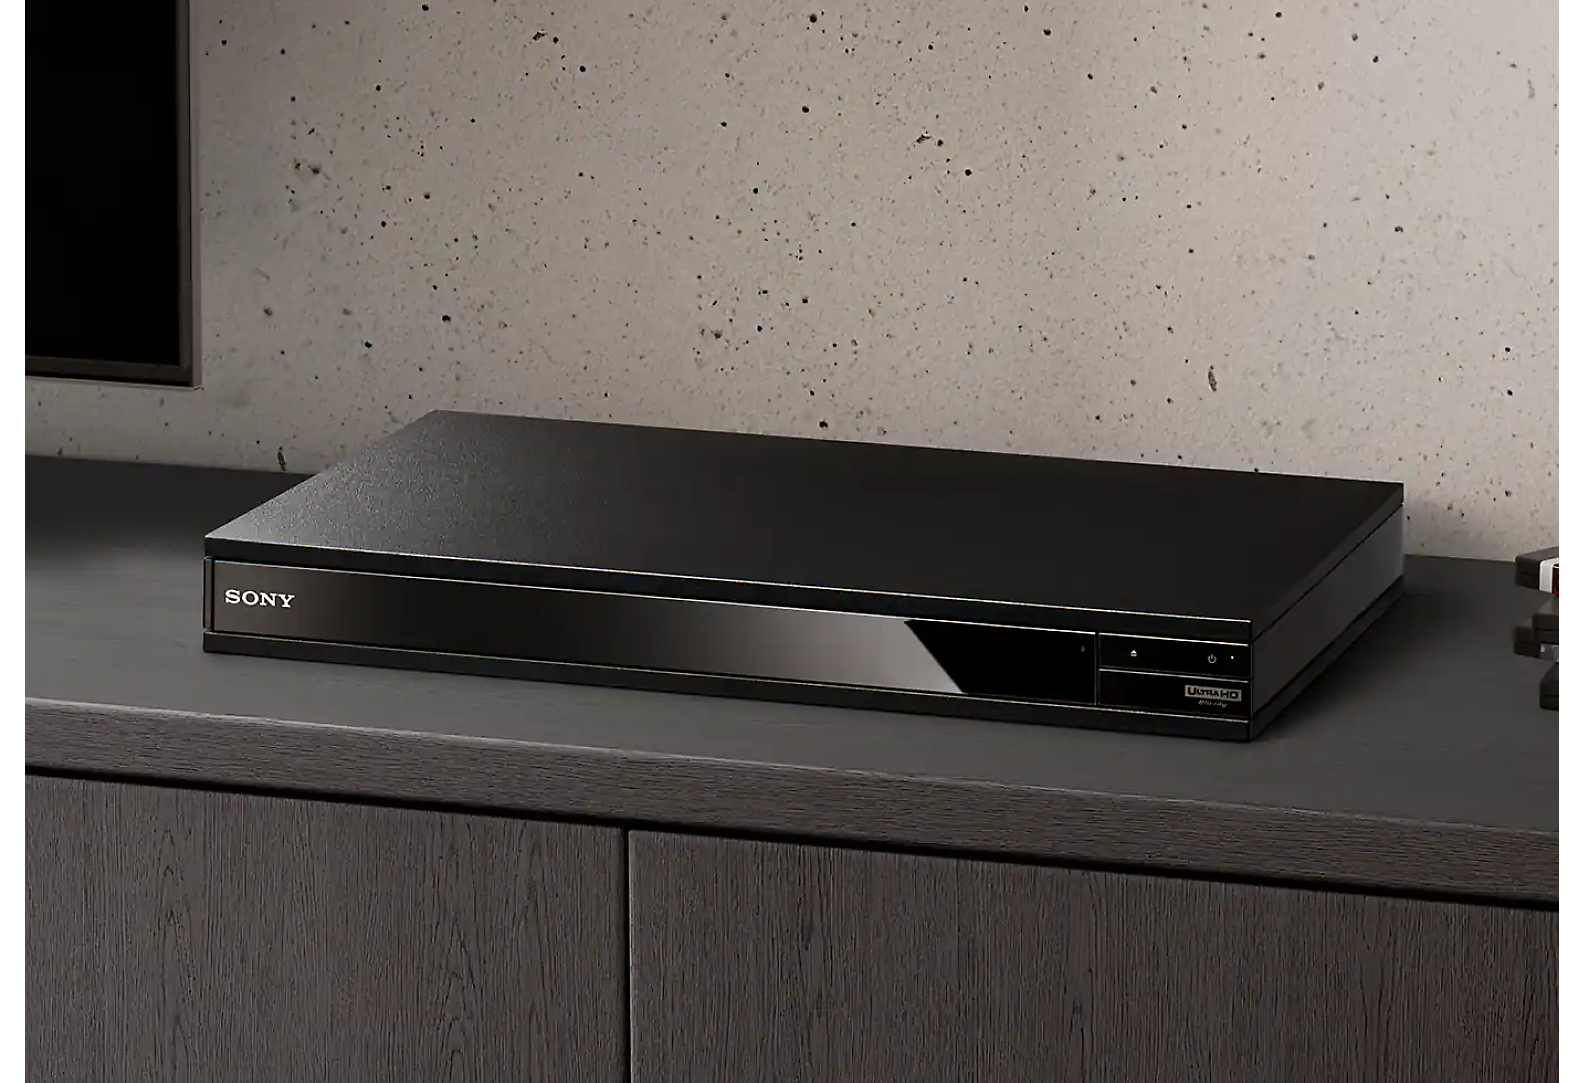 Medzi hromadou diskov Blu-ray a čiernym televízorom je vidieť čierny prehrávač diskov Blu-ray.